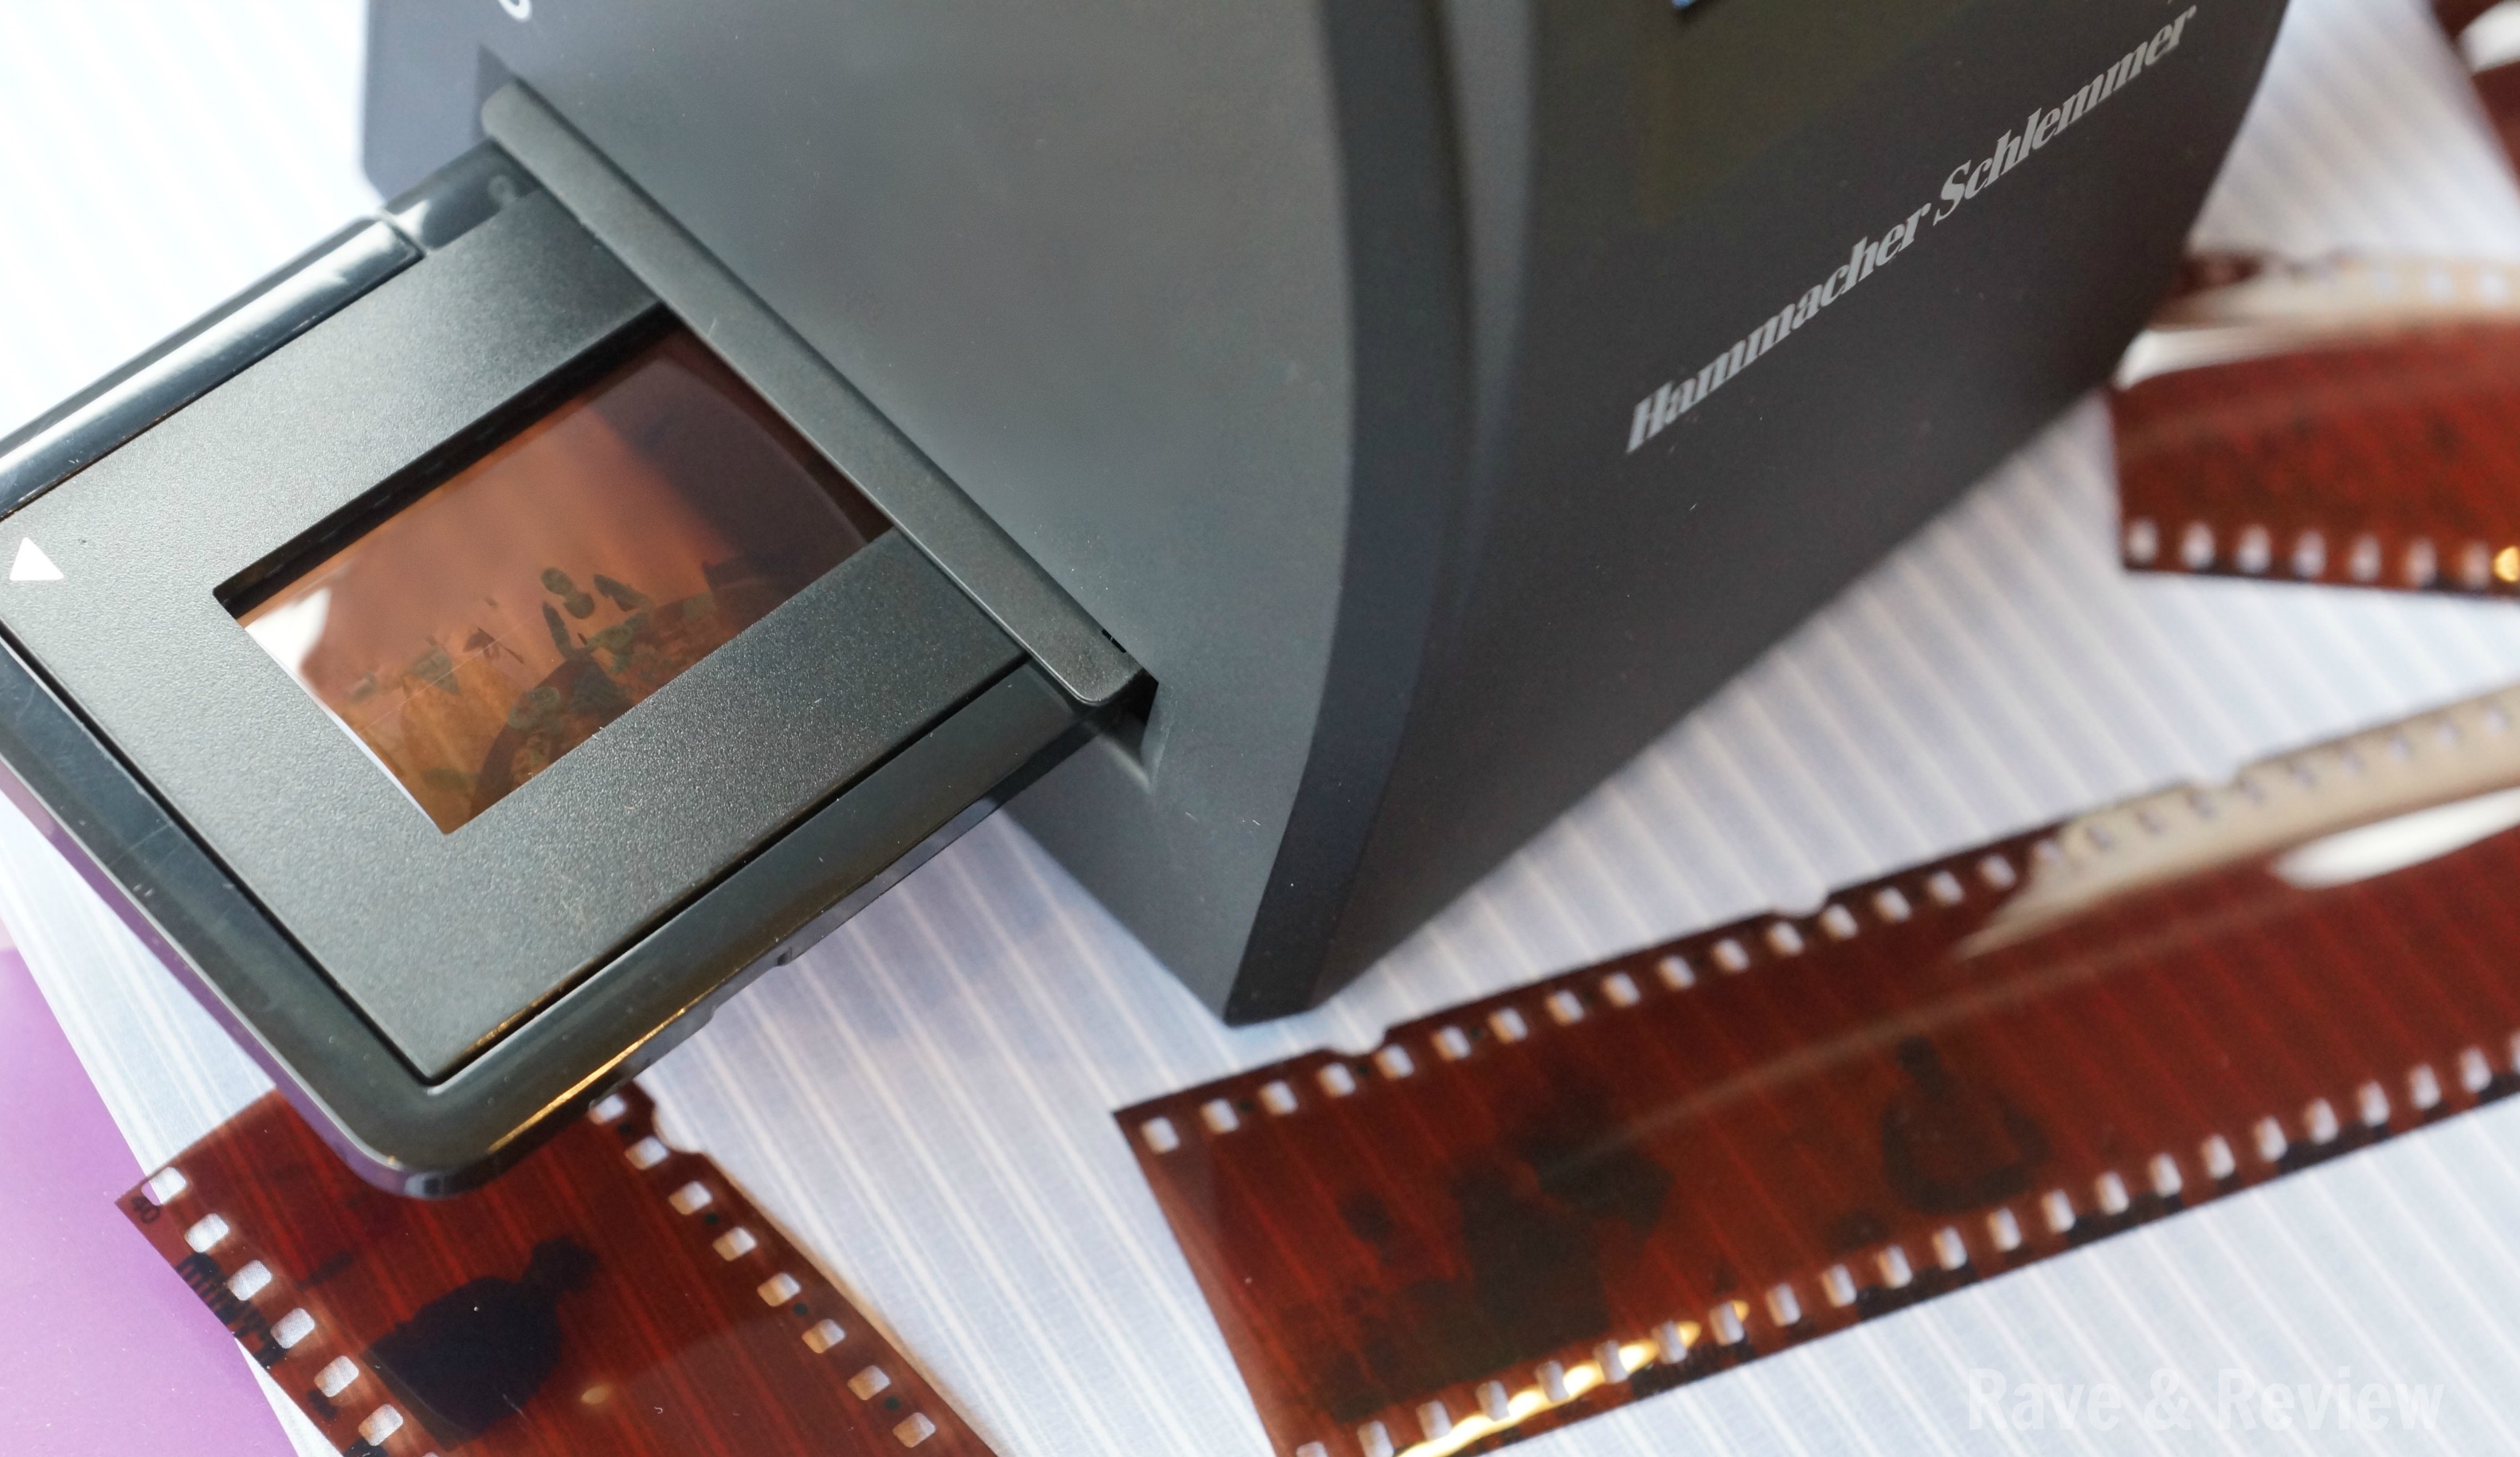 hammacher schlemmer 35mm slide converter